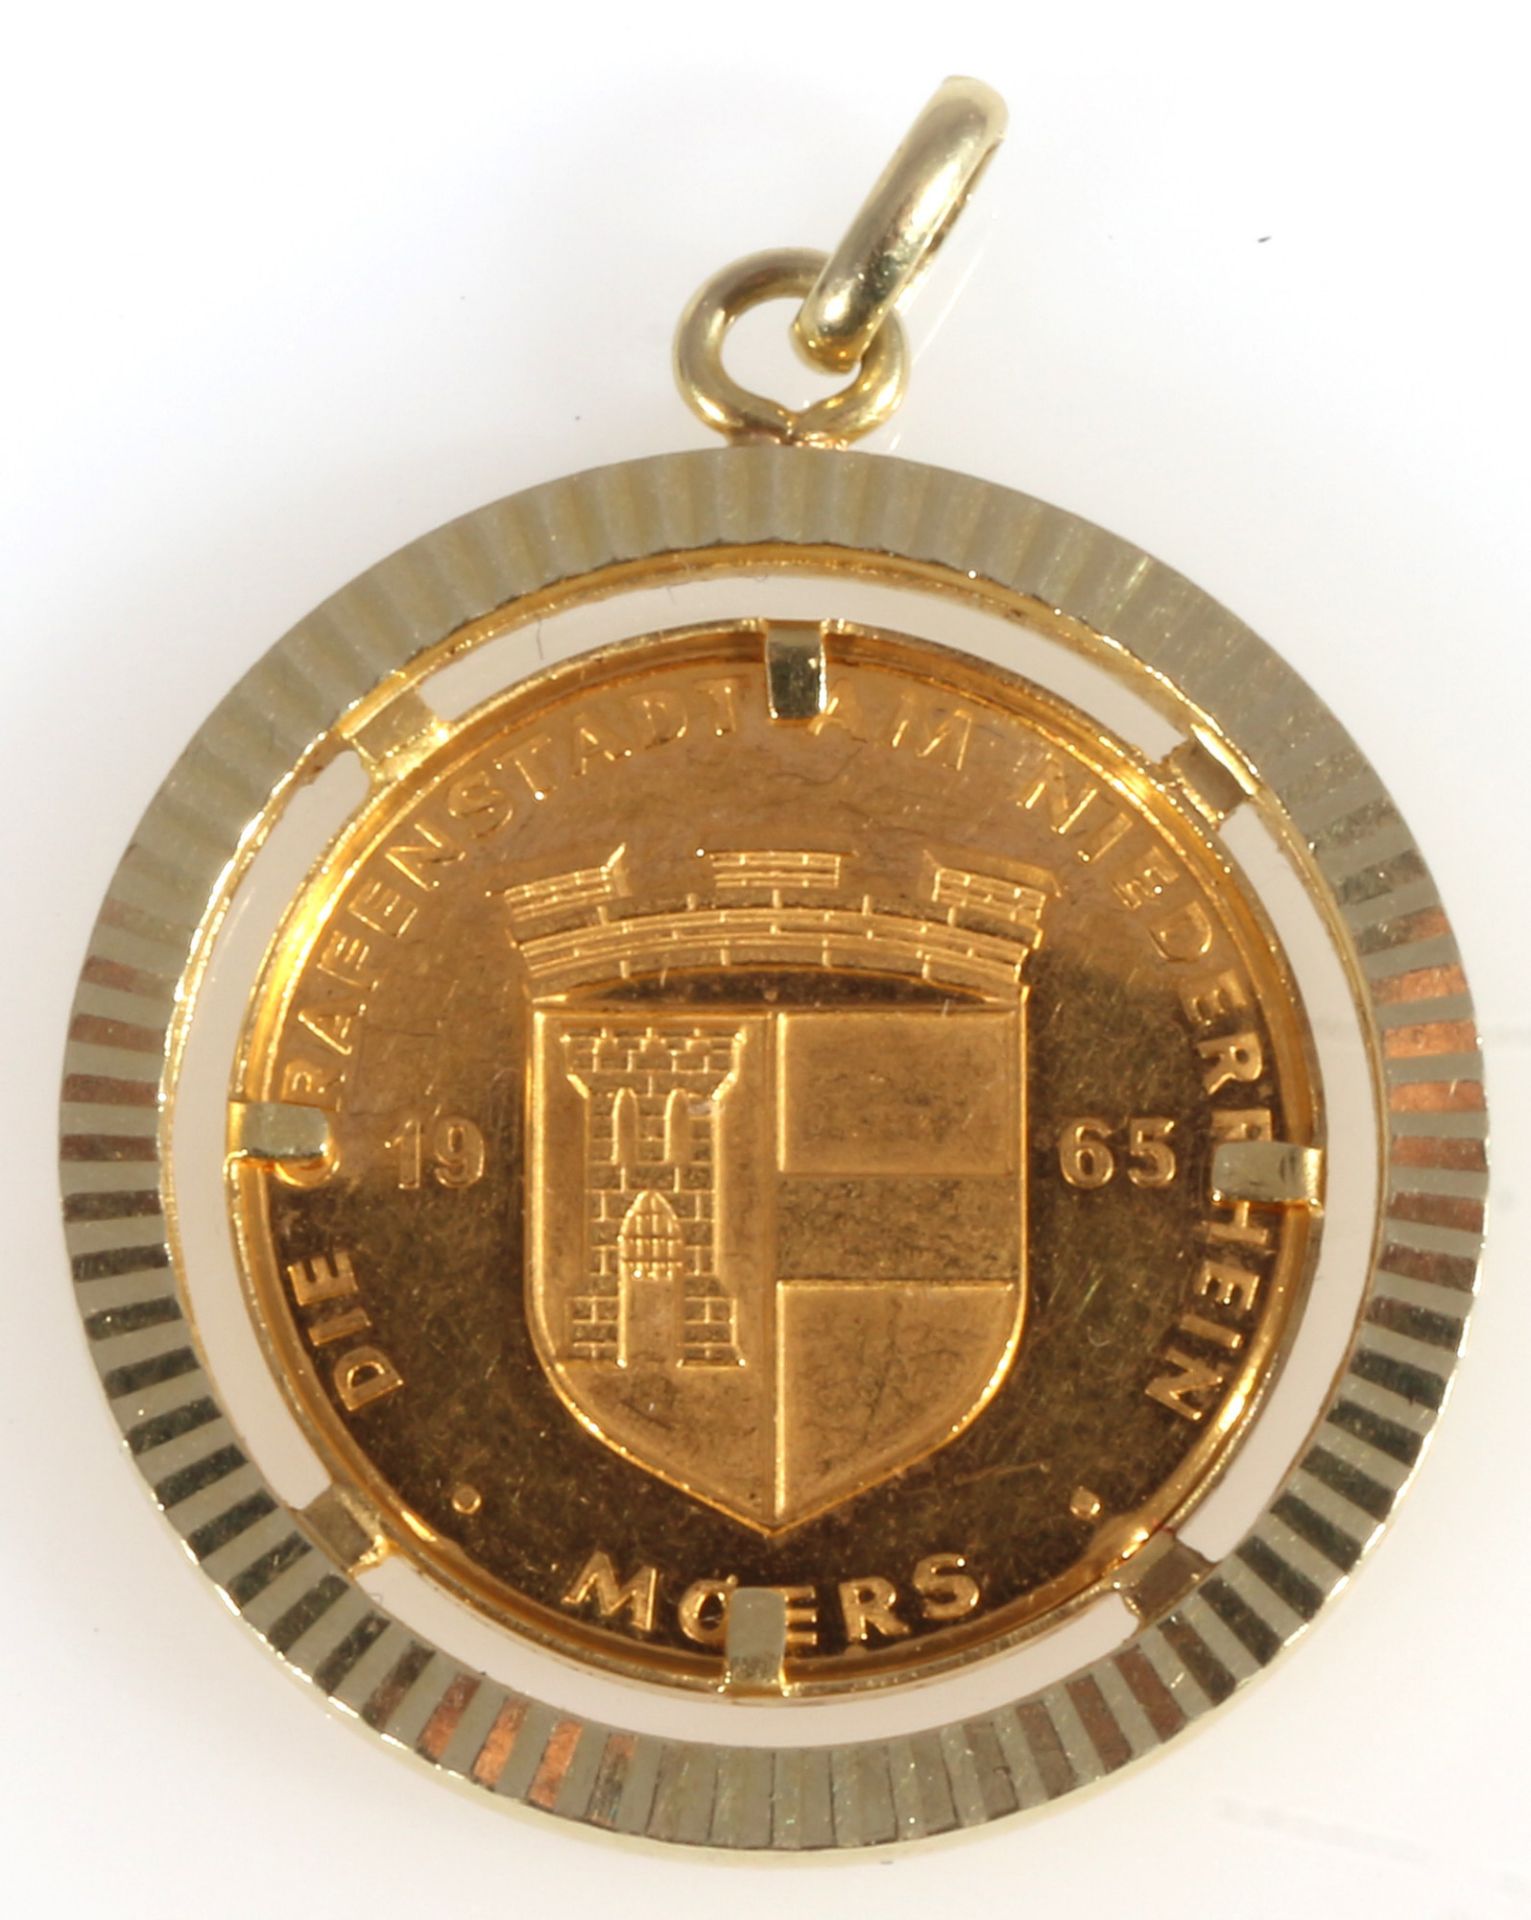 Goldmünze / 986 Gold Medaille Die Grafenstadt am Niederrhein Moers 1965, 986 gold medal coin, - Image 2 of 3